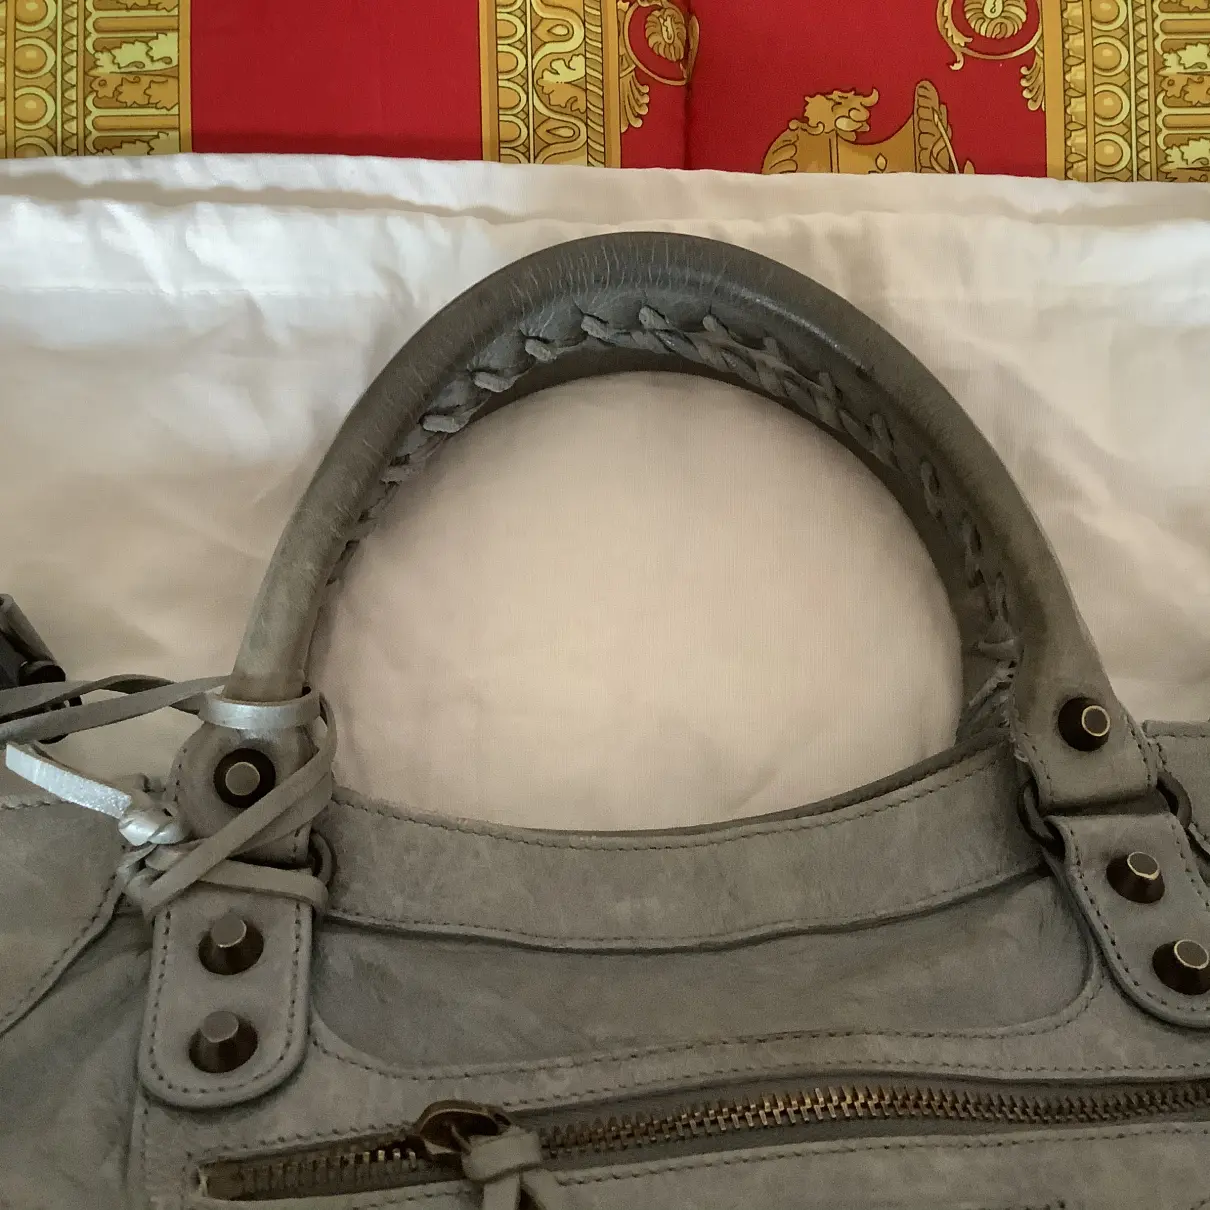 Buy Balenciaga Vélo leather handbag online